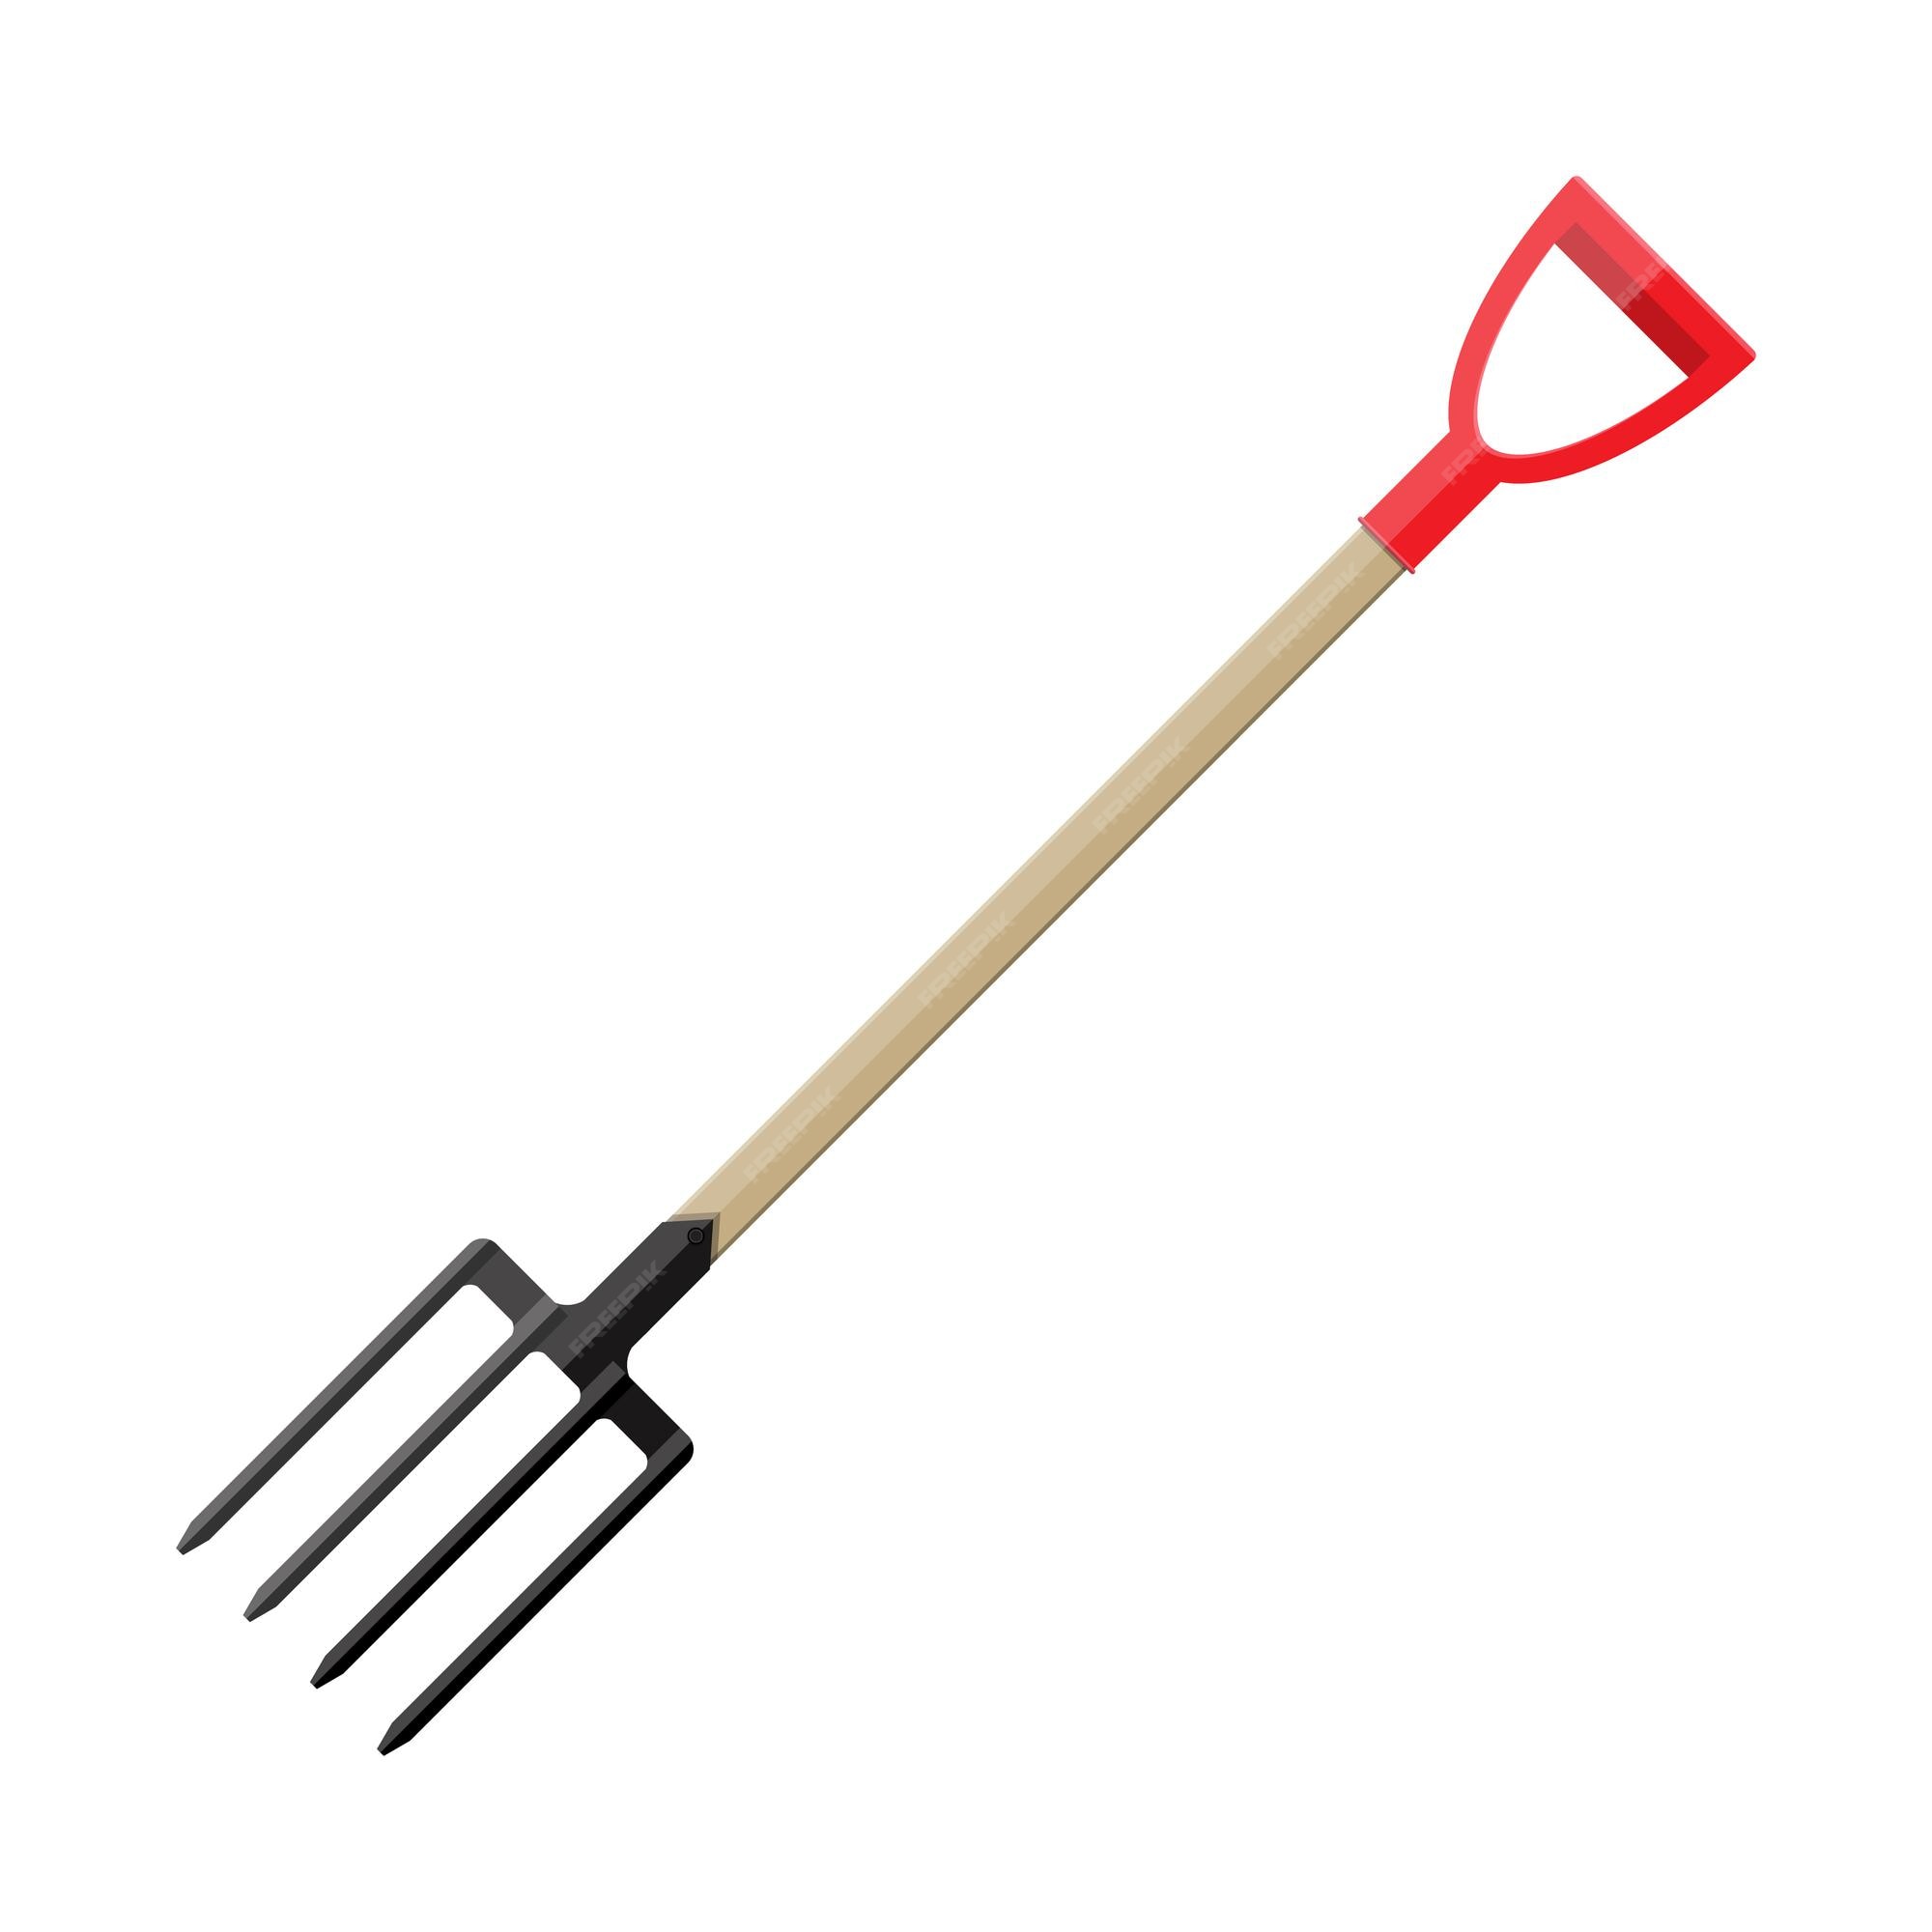 Premium Vector | Metal pitchfork. hayfork tool with plastic handle